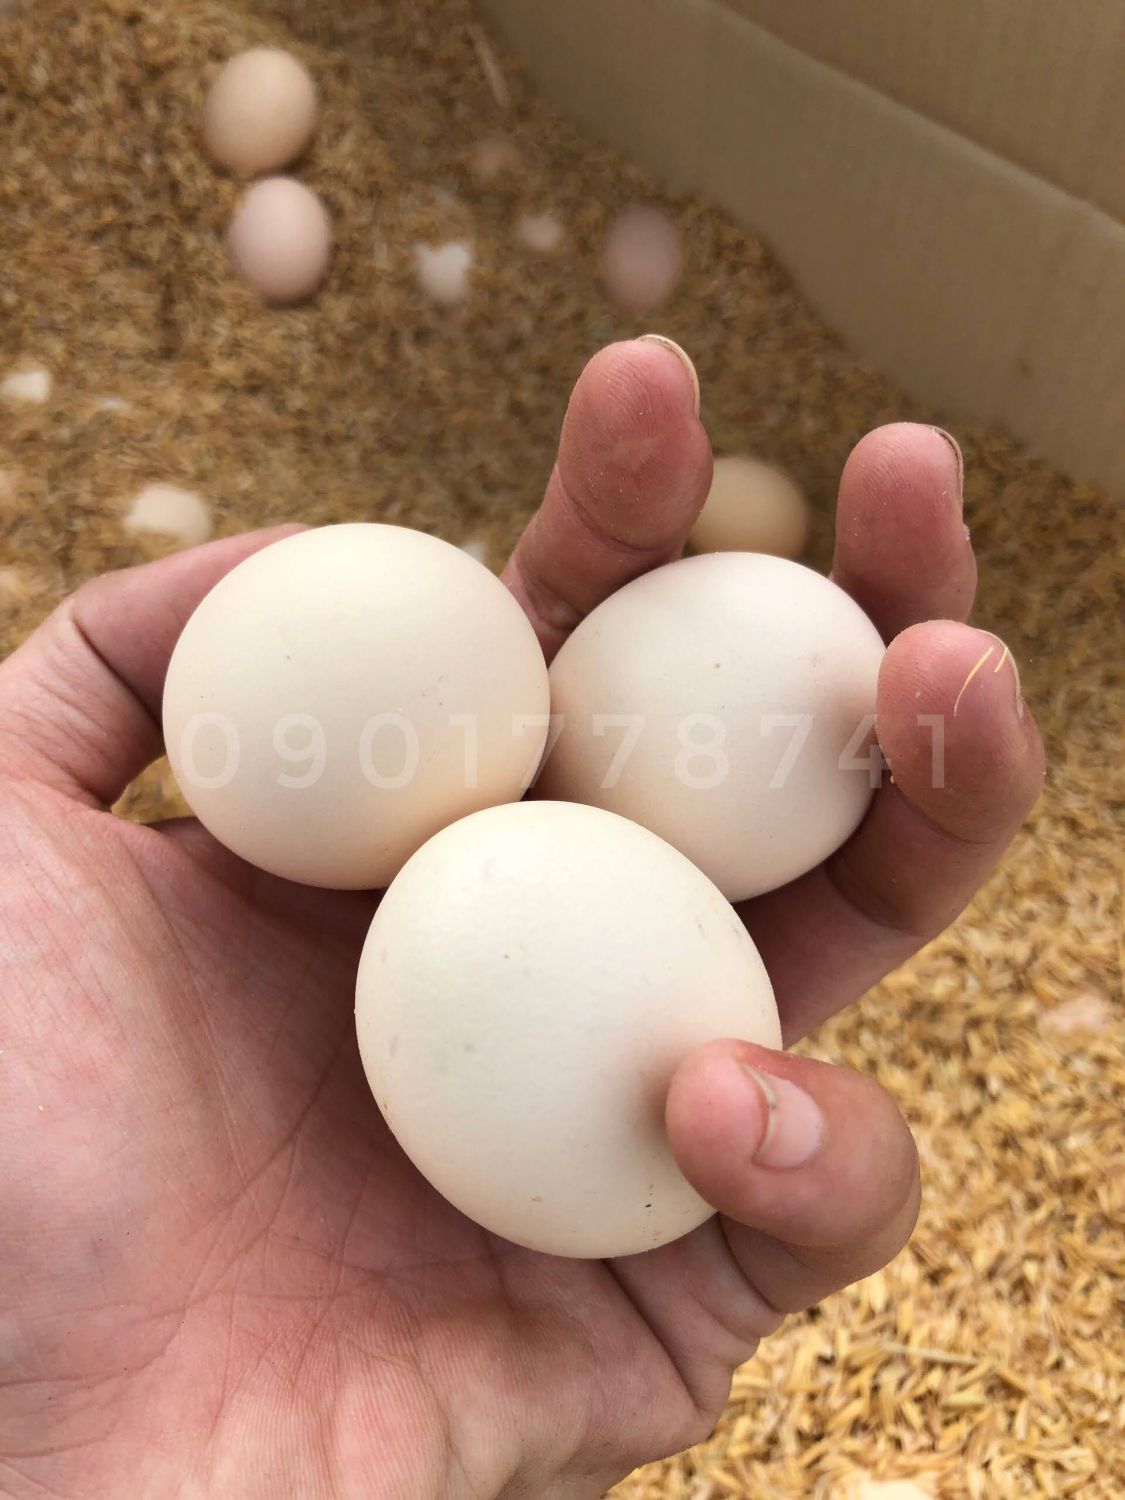 Thí nghiệm: trứng gà “xịn” có chắc ngon hơn trứng gà “không xịn”?